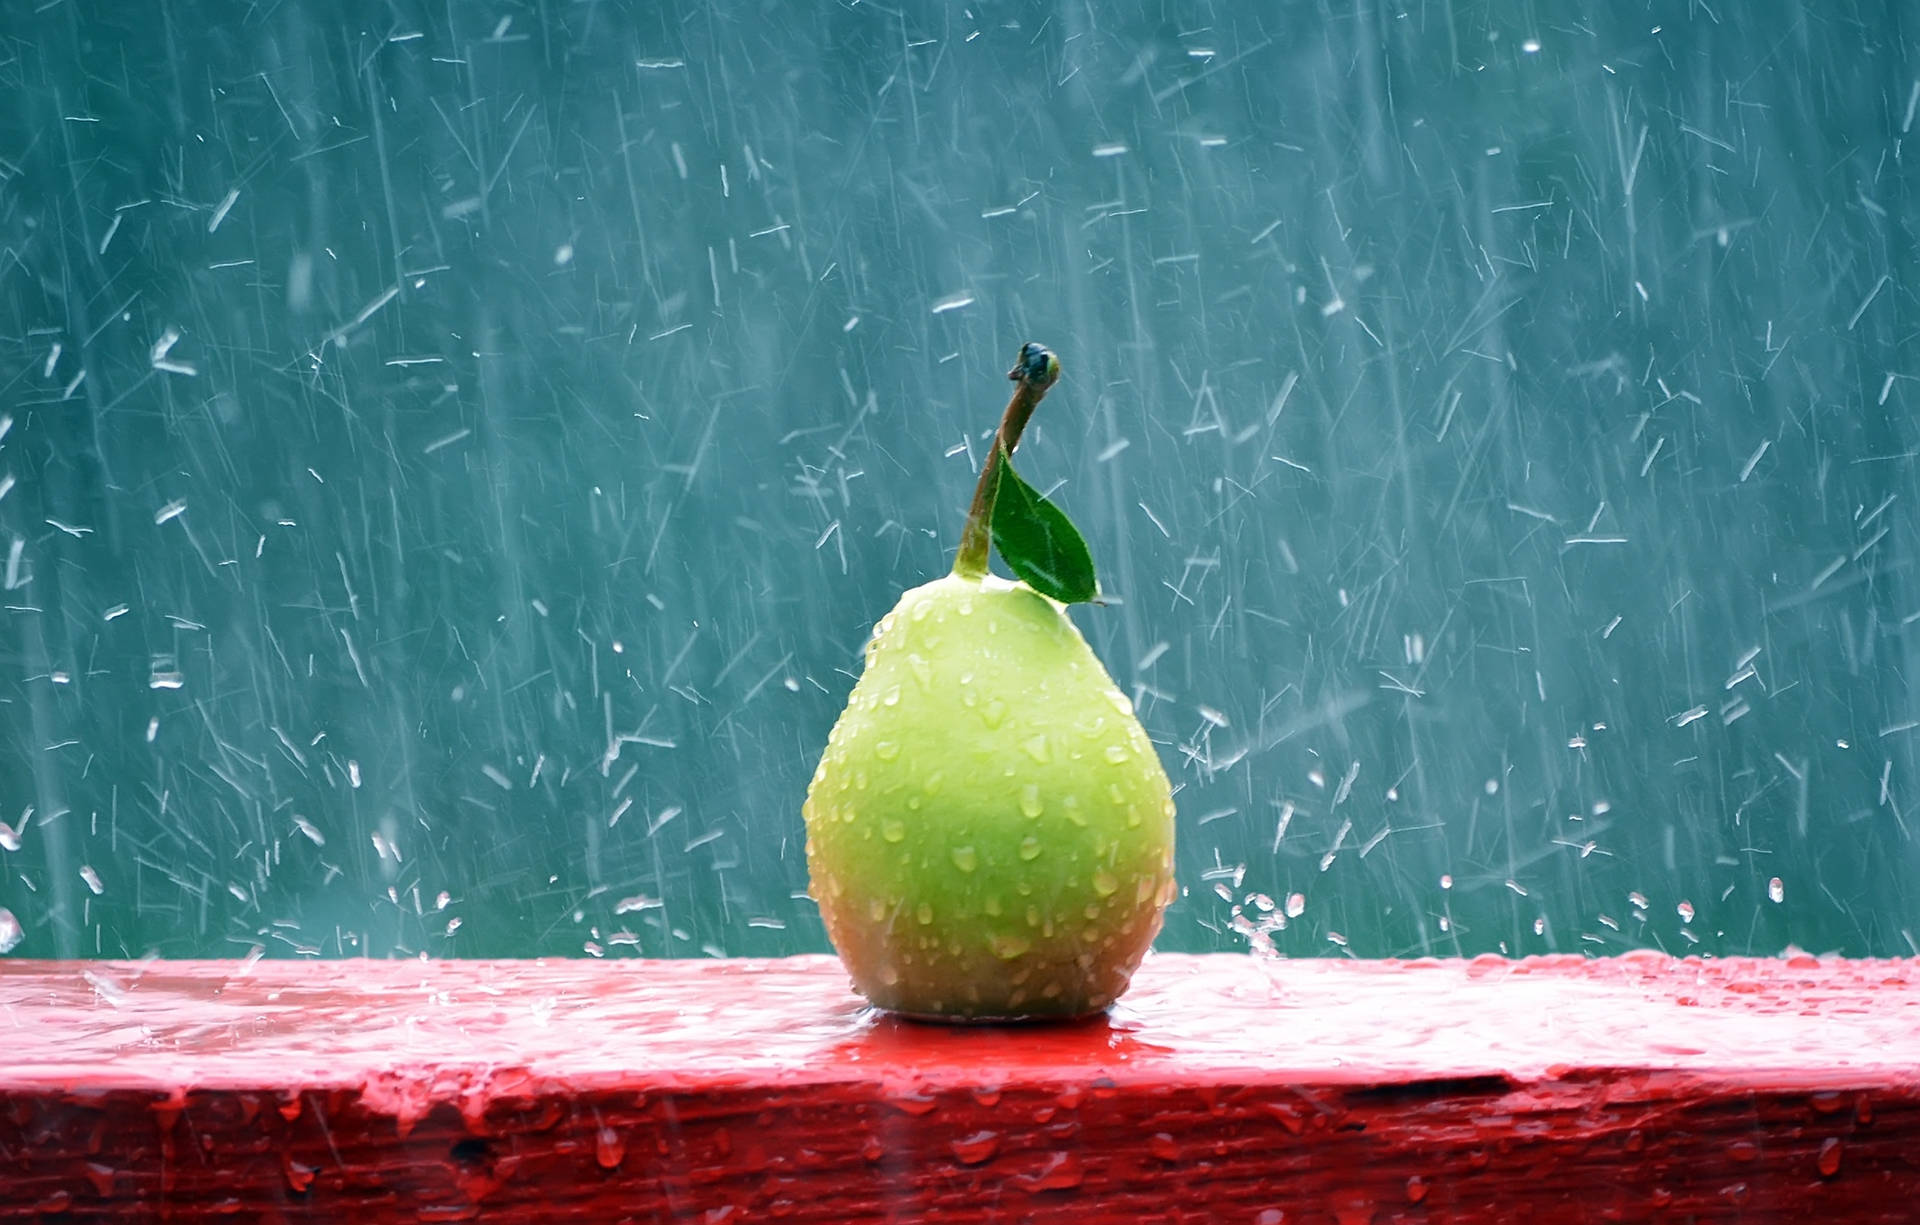 Pear Rainy Day Wallpaper